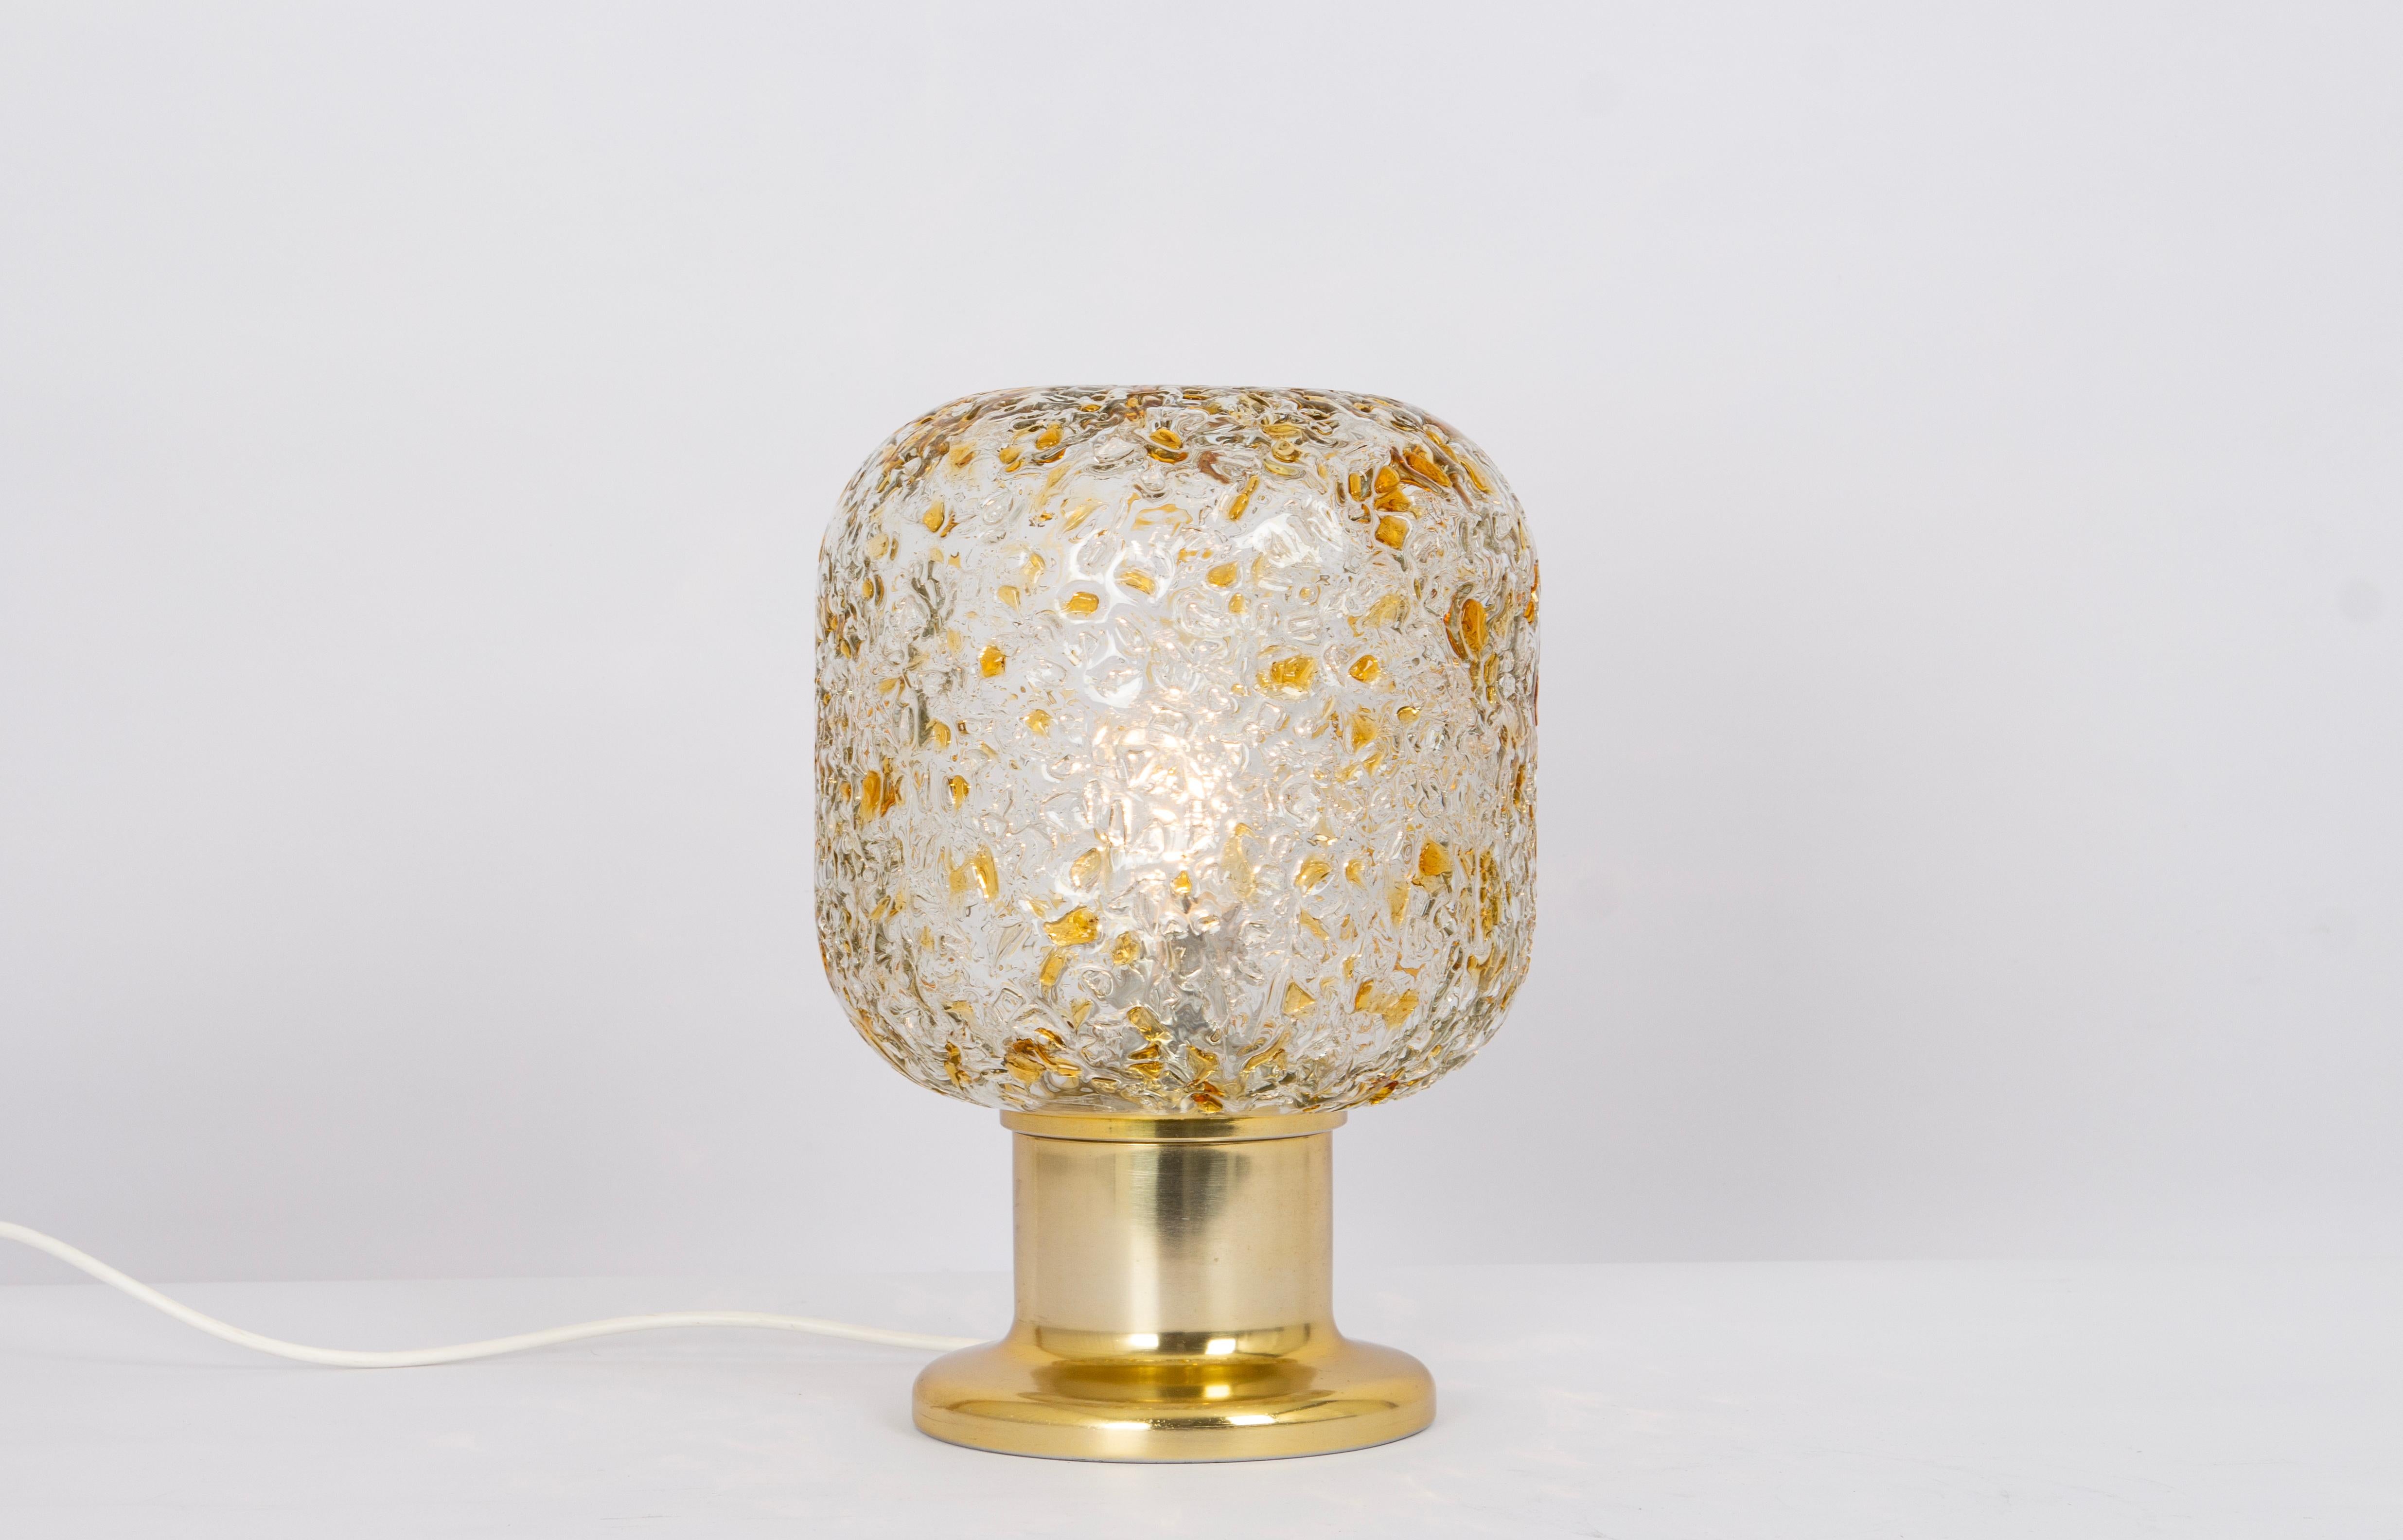 Une paire de lampes de table vintage spectaculaires fabriquées par Doria dans les années 1970.

Cette lampe est magnifiquement réalisée avec un grand abat-jour en verre et un cadre de couleur or. Il est d'une taille fantastique ; il est très